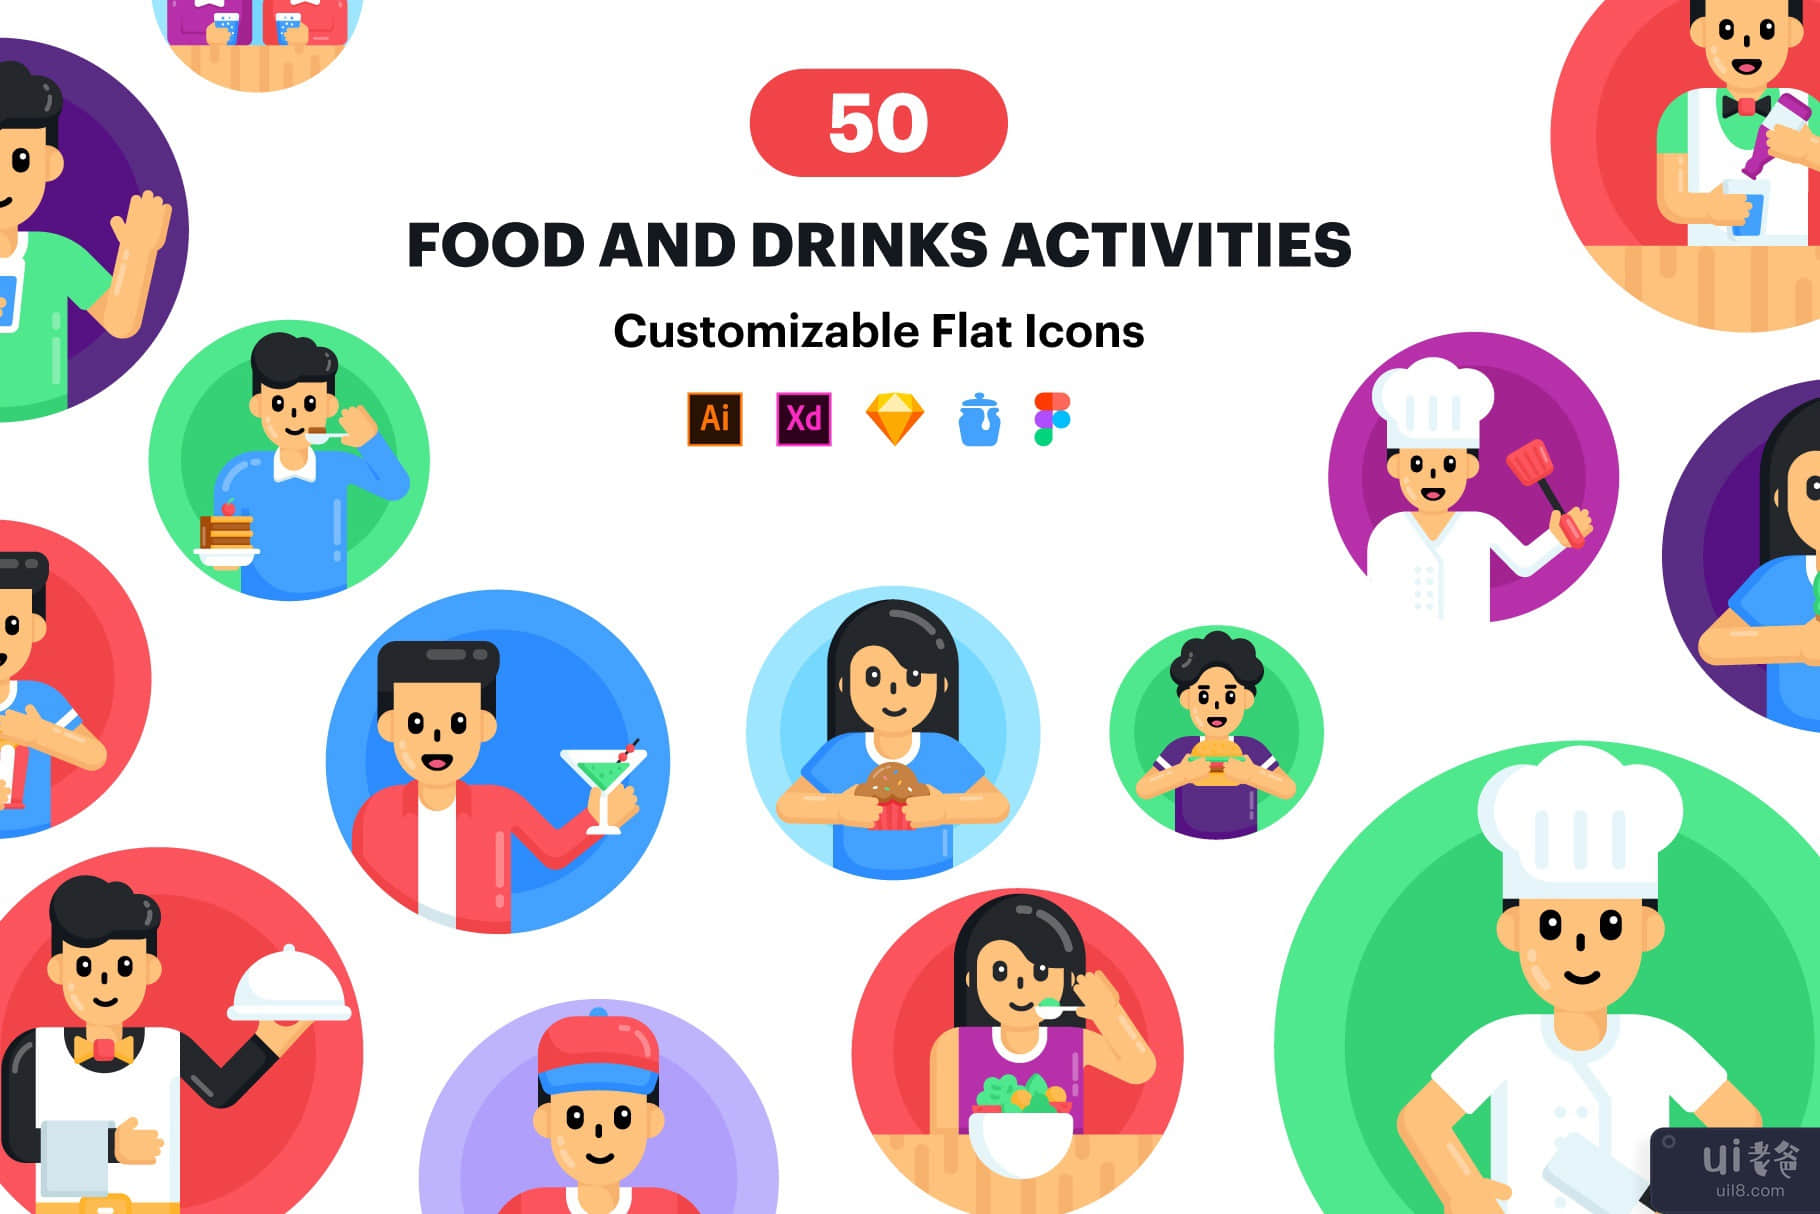 食品和饮料图标 - 50 个矢量图标(Food and Drinks Icons - 50 Vector Icons)插图6